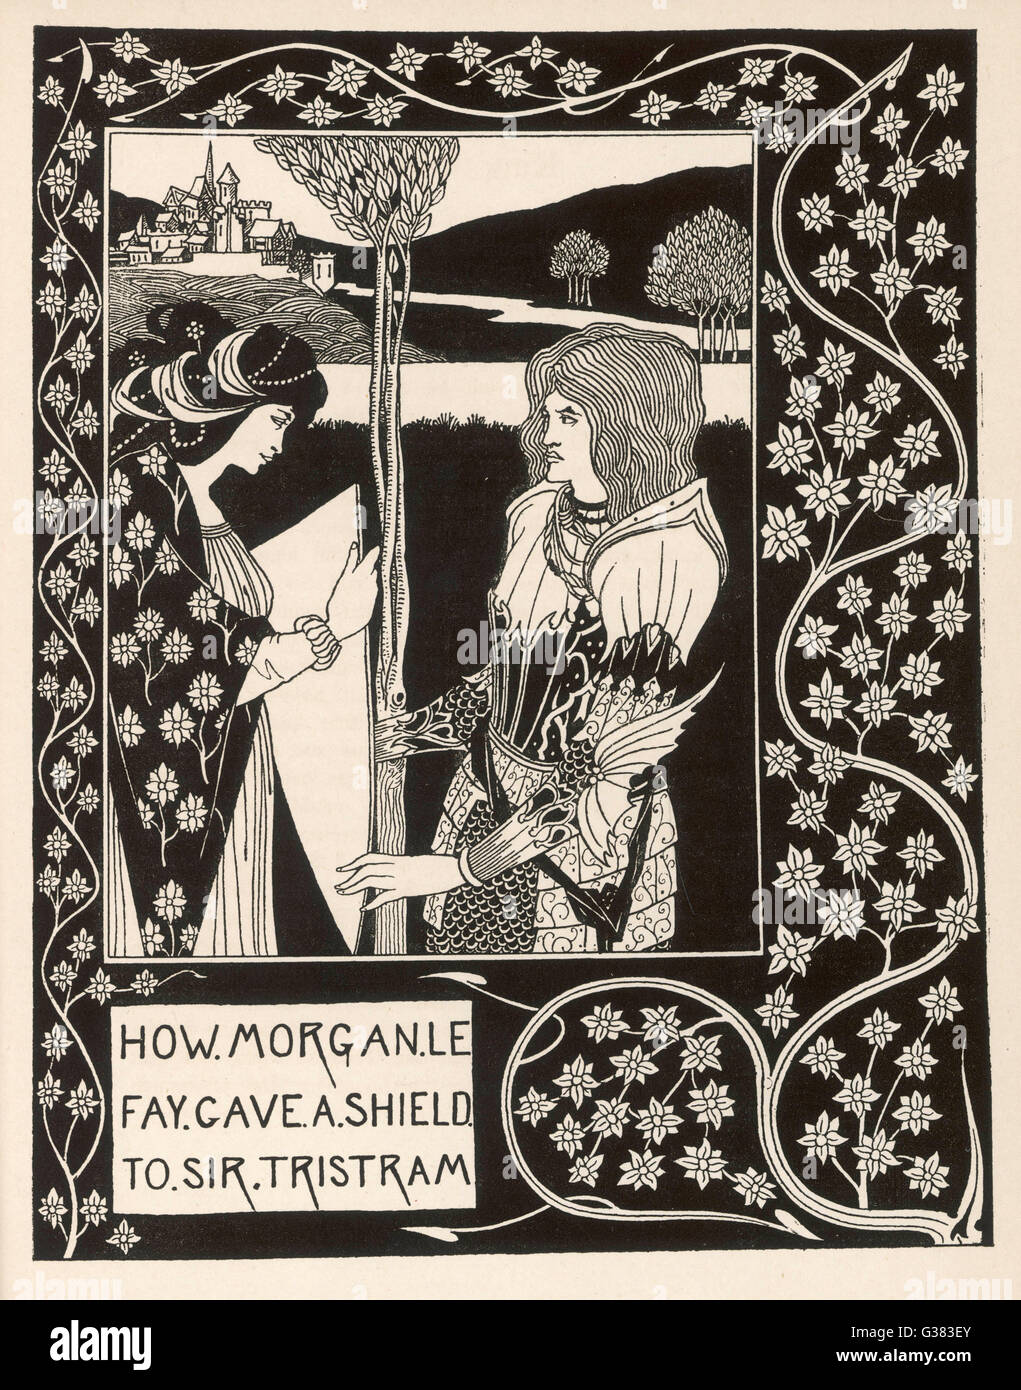 Morgan le Fay donne un bouclier à Sir Tristram Date : 1893 - 1894 Banque D'Images